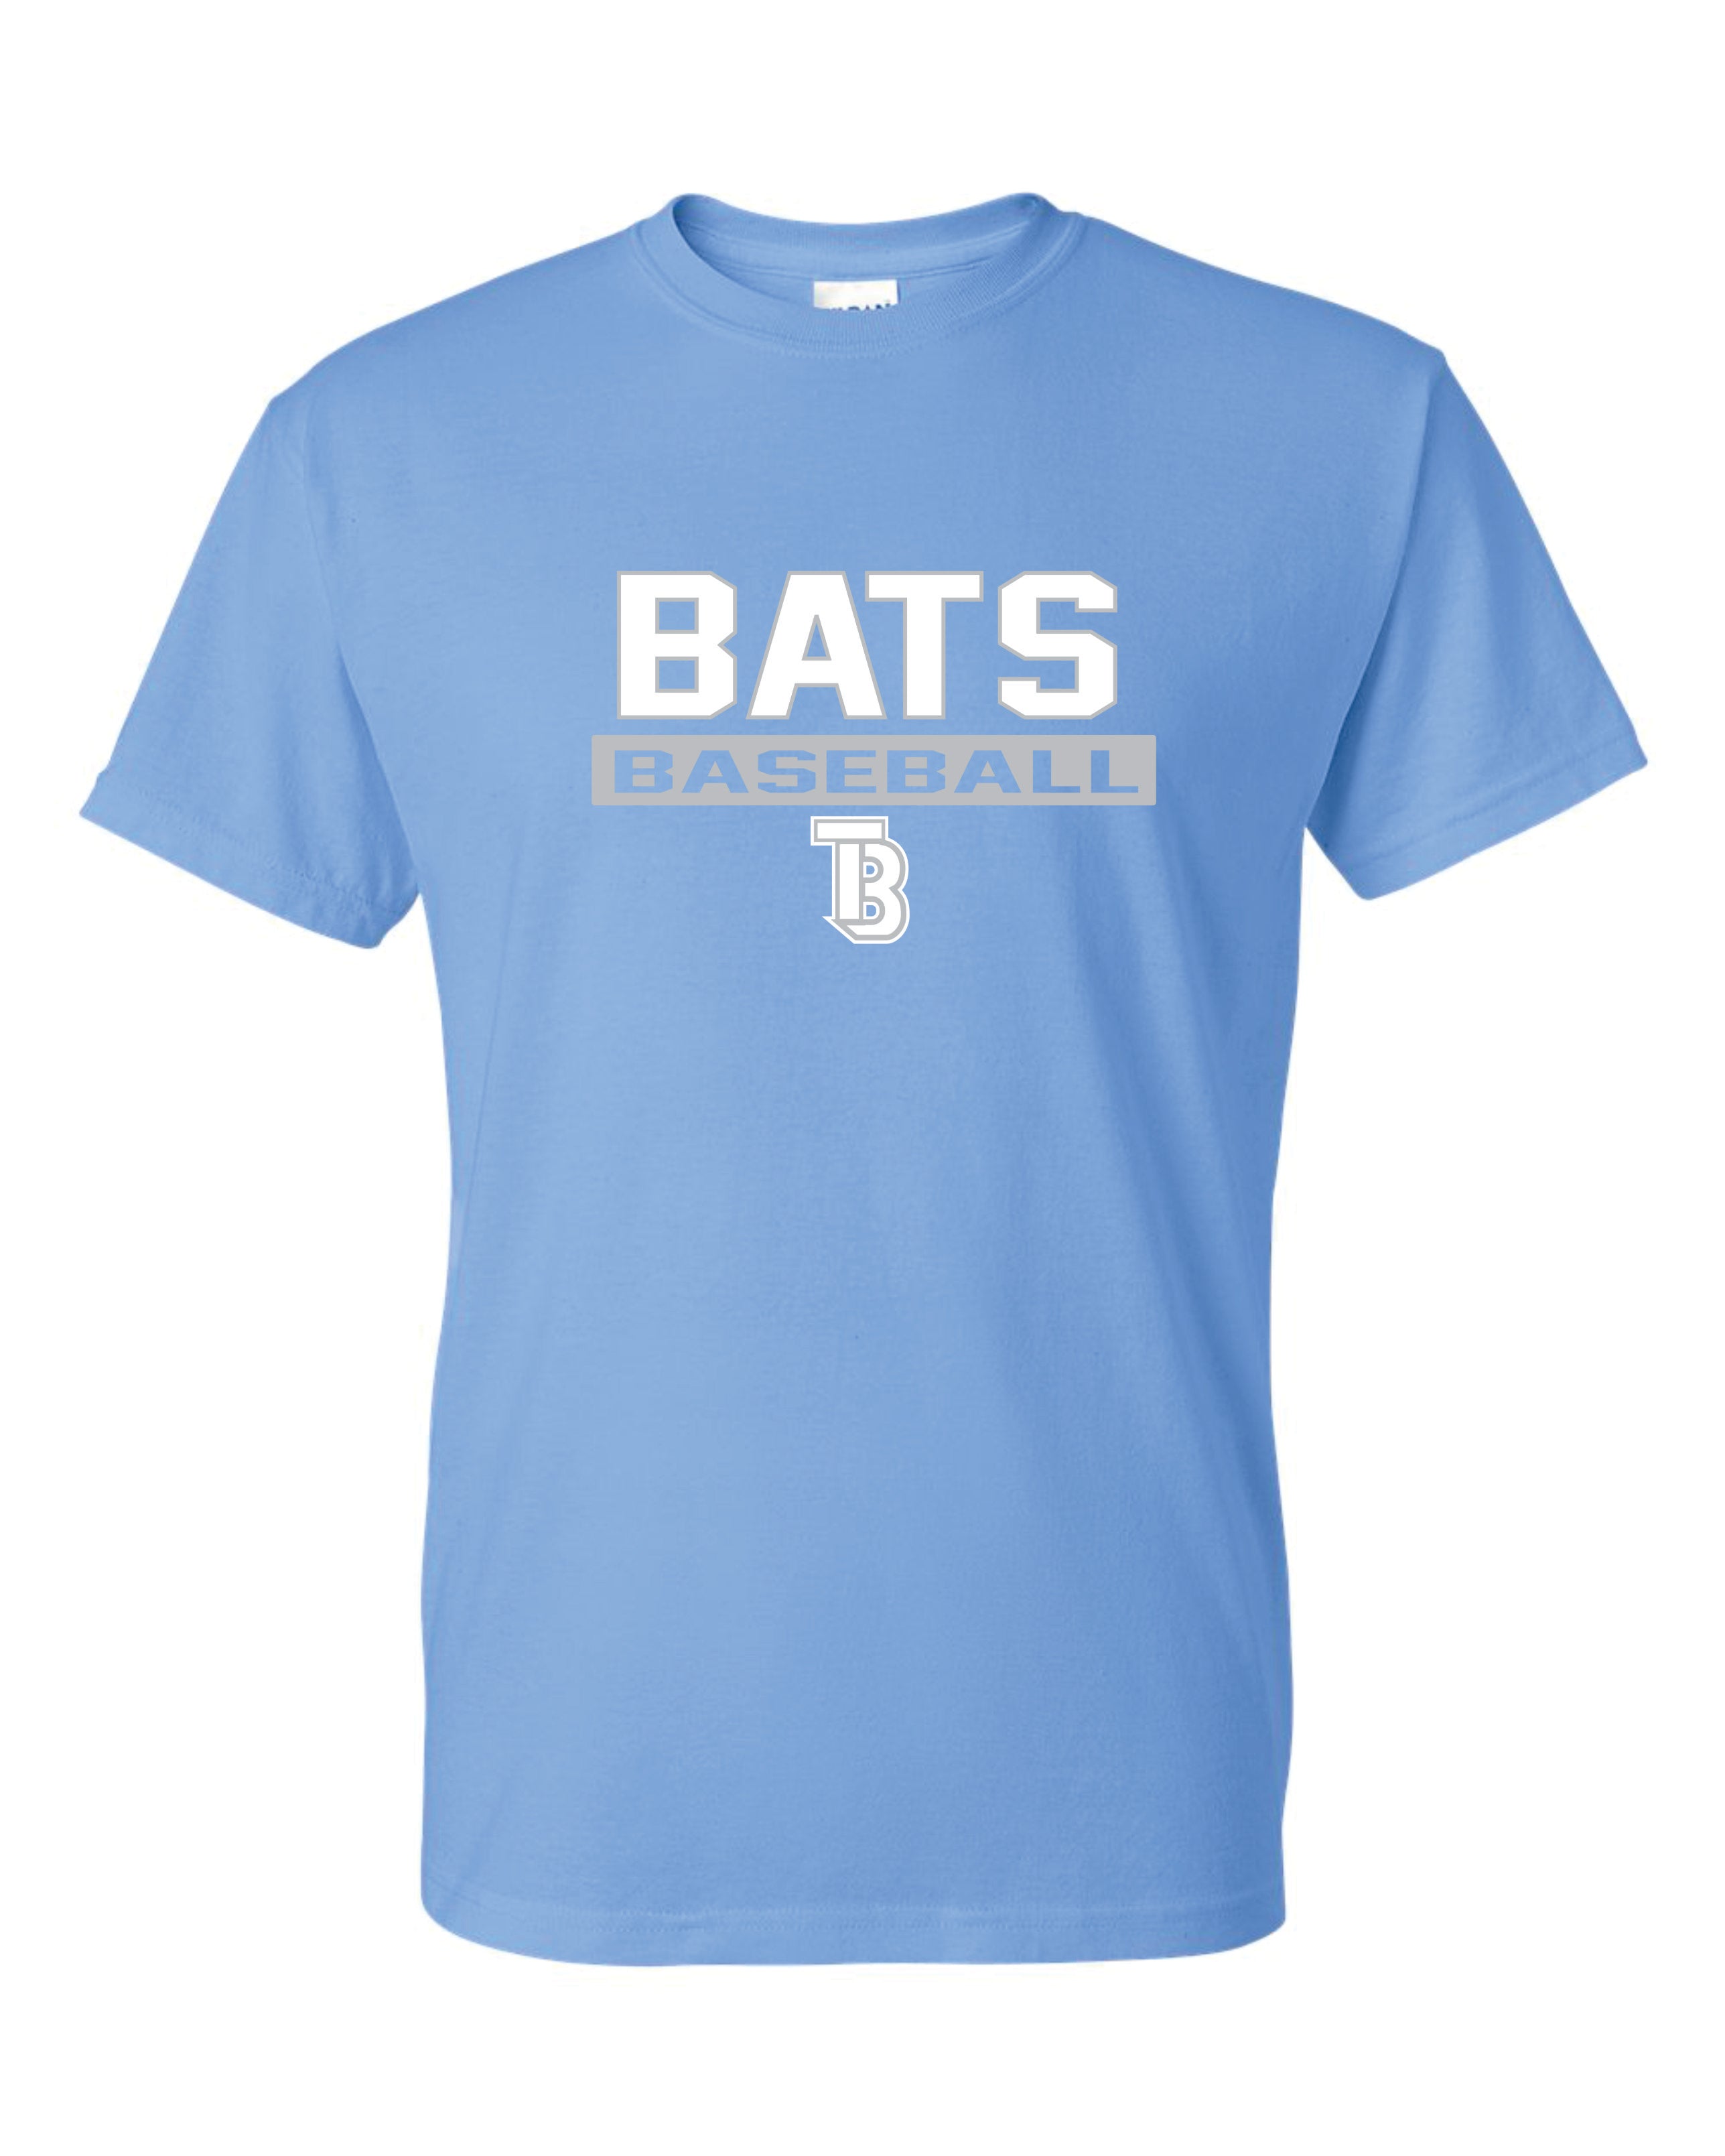 Tampa Bay Bats Short Sleeve T-Shirt 50/50 Blend ADULT